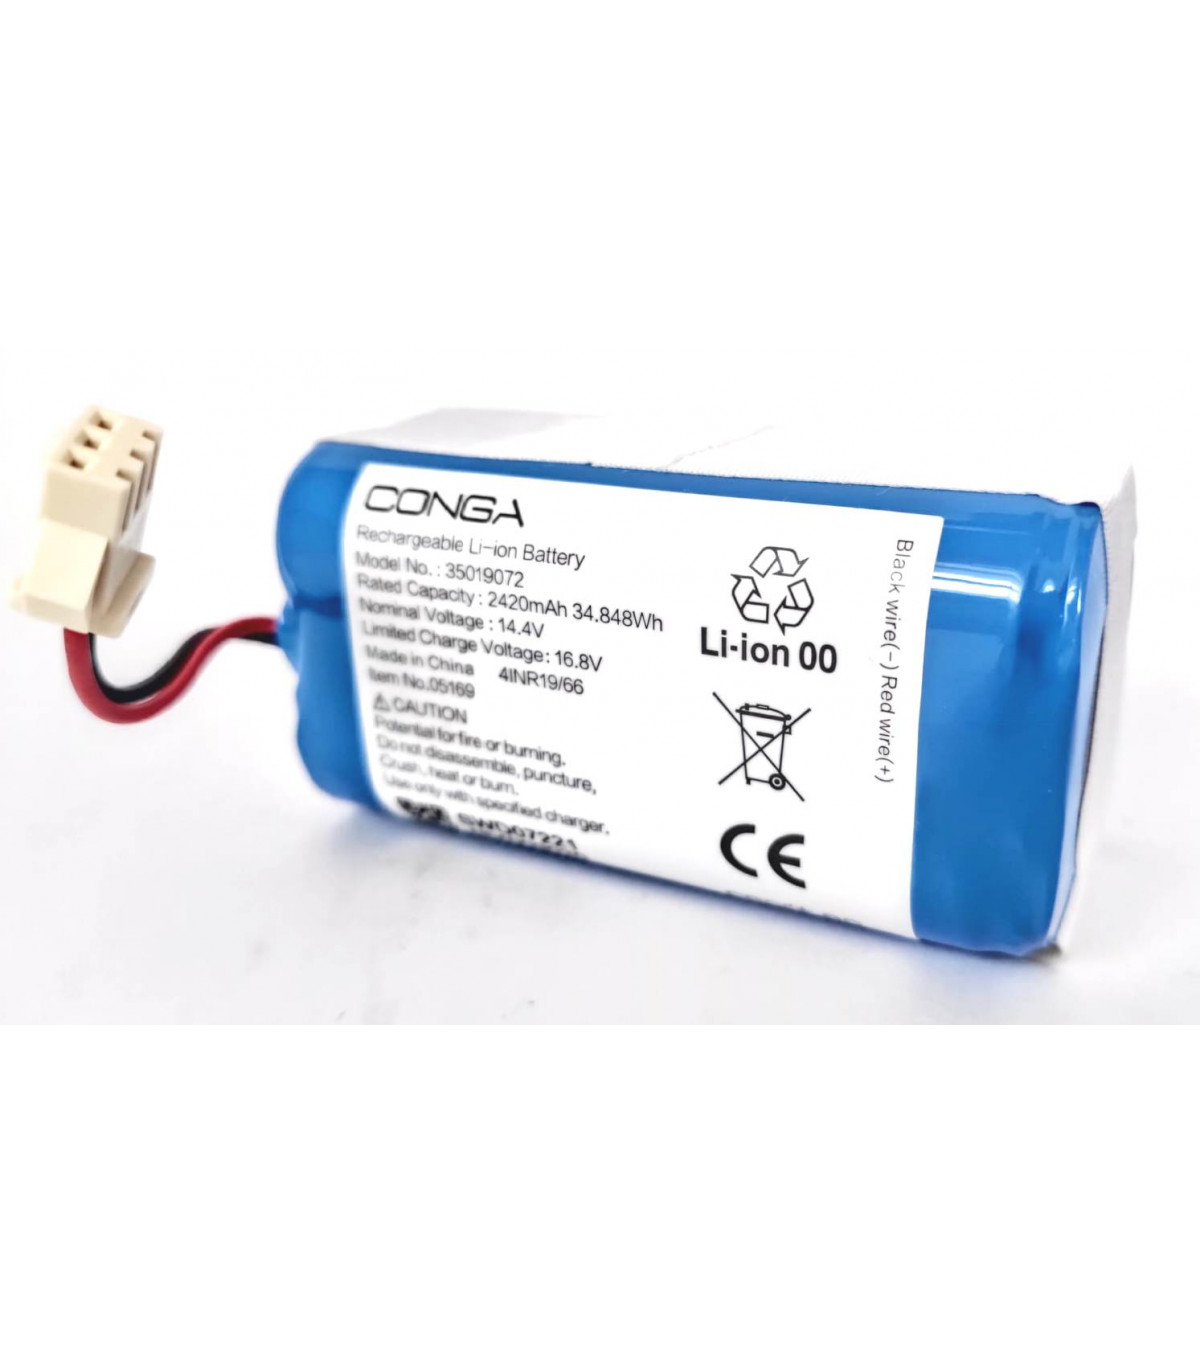  Synergy Digital Batería para aspiradora, compatible con  aspiradora Conga 1790 Vital, (iones de litio, 14.4 V, 2600 mAh), capacidad  ultra alta, repuesto para batería CECOTEC CONG1002 : Hogar y Cocina